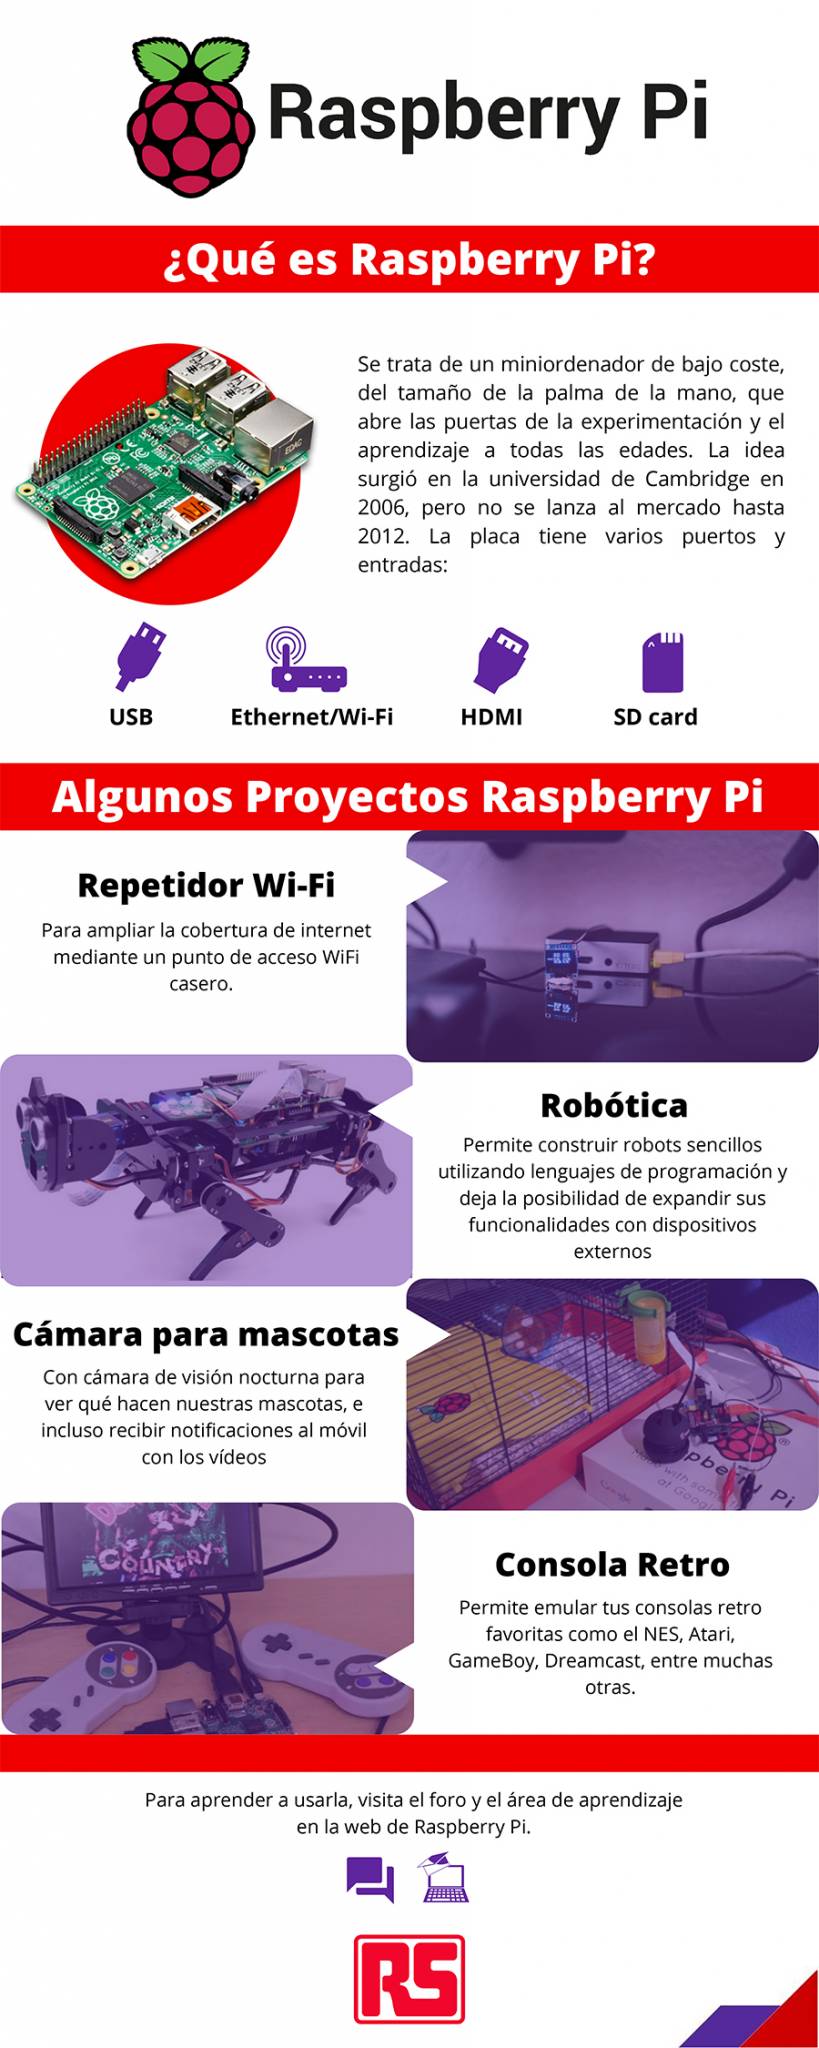 Adentrándose en el mundo de la tecnología a través de Raspberry Pi